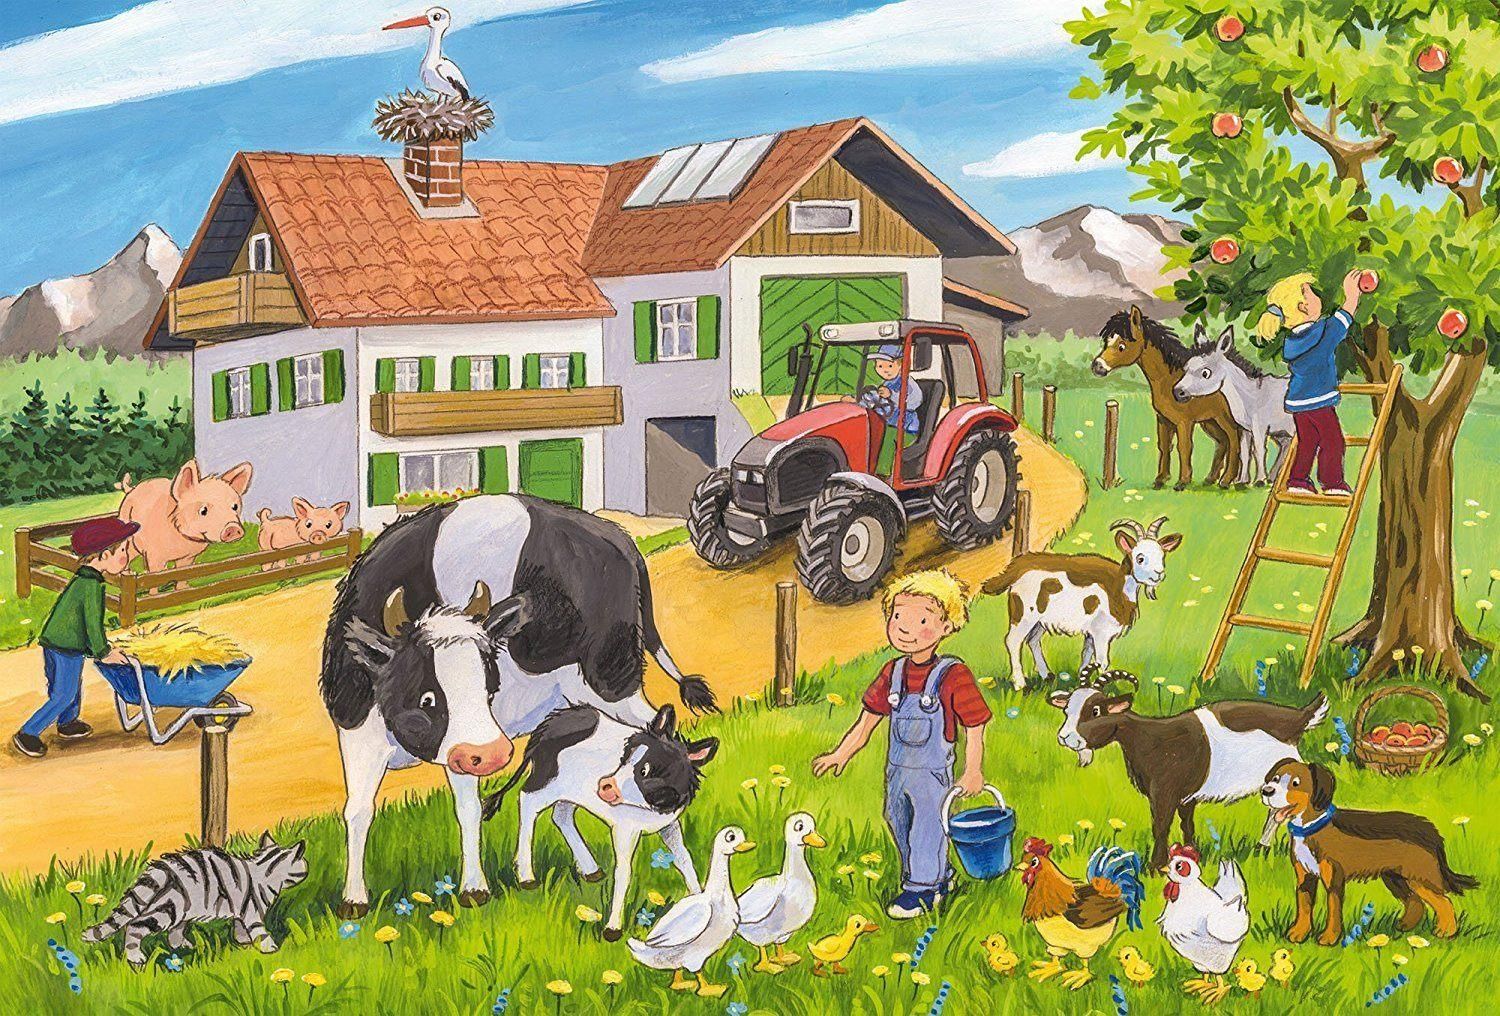 He lives on the farm. Рисунок на тему сельское хозяйство. Ферма (сельское хозяйство). Сельское хозяйство для детей. Сюжетная картина на ферме.